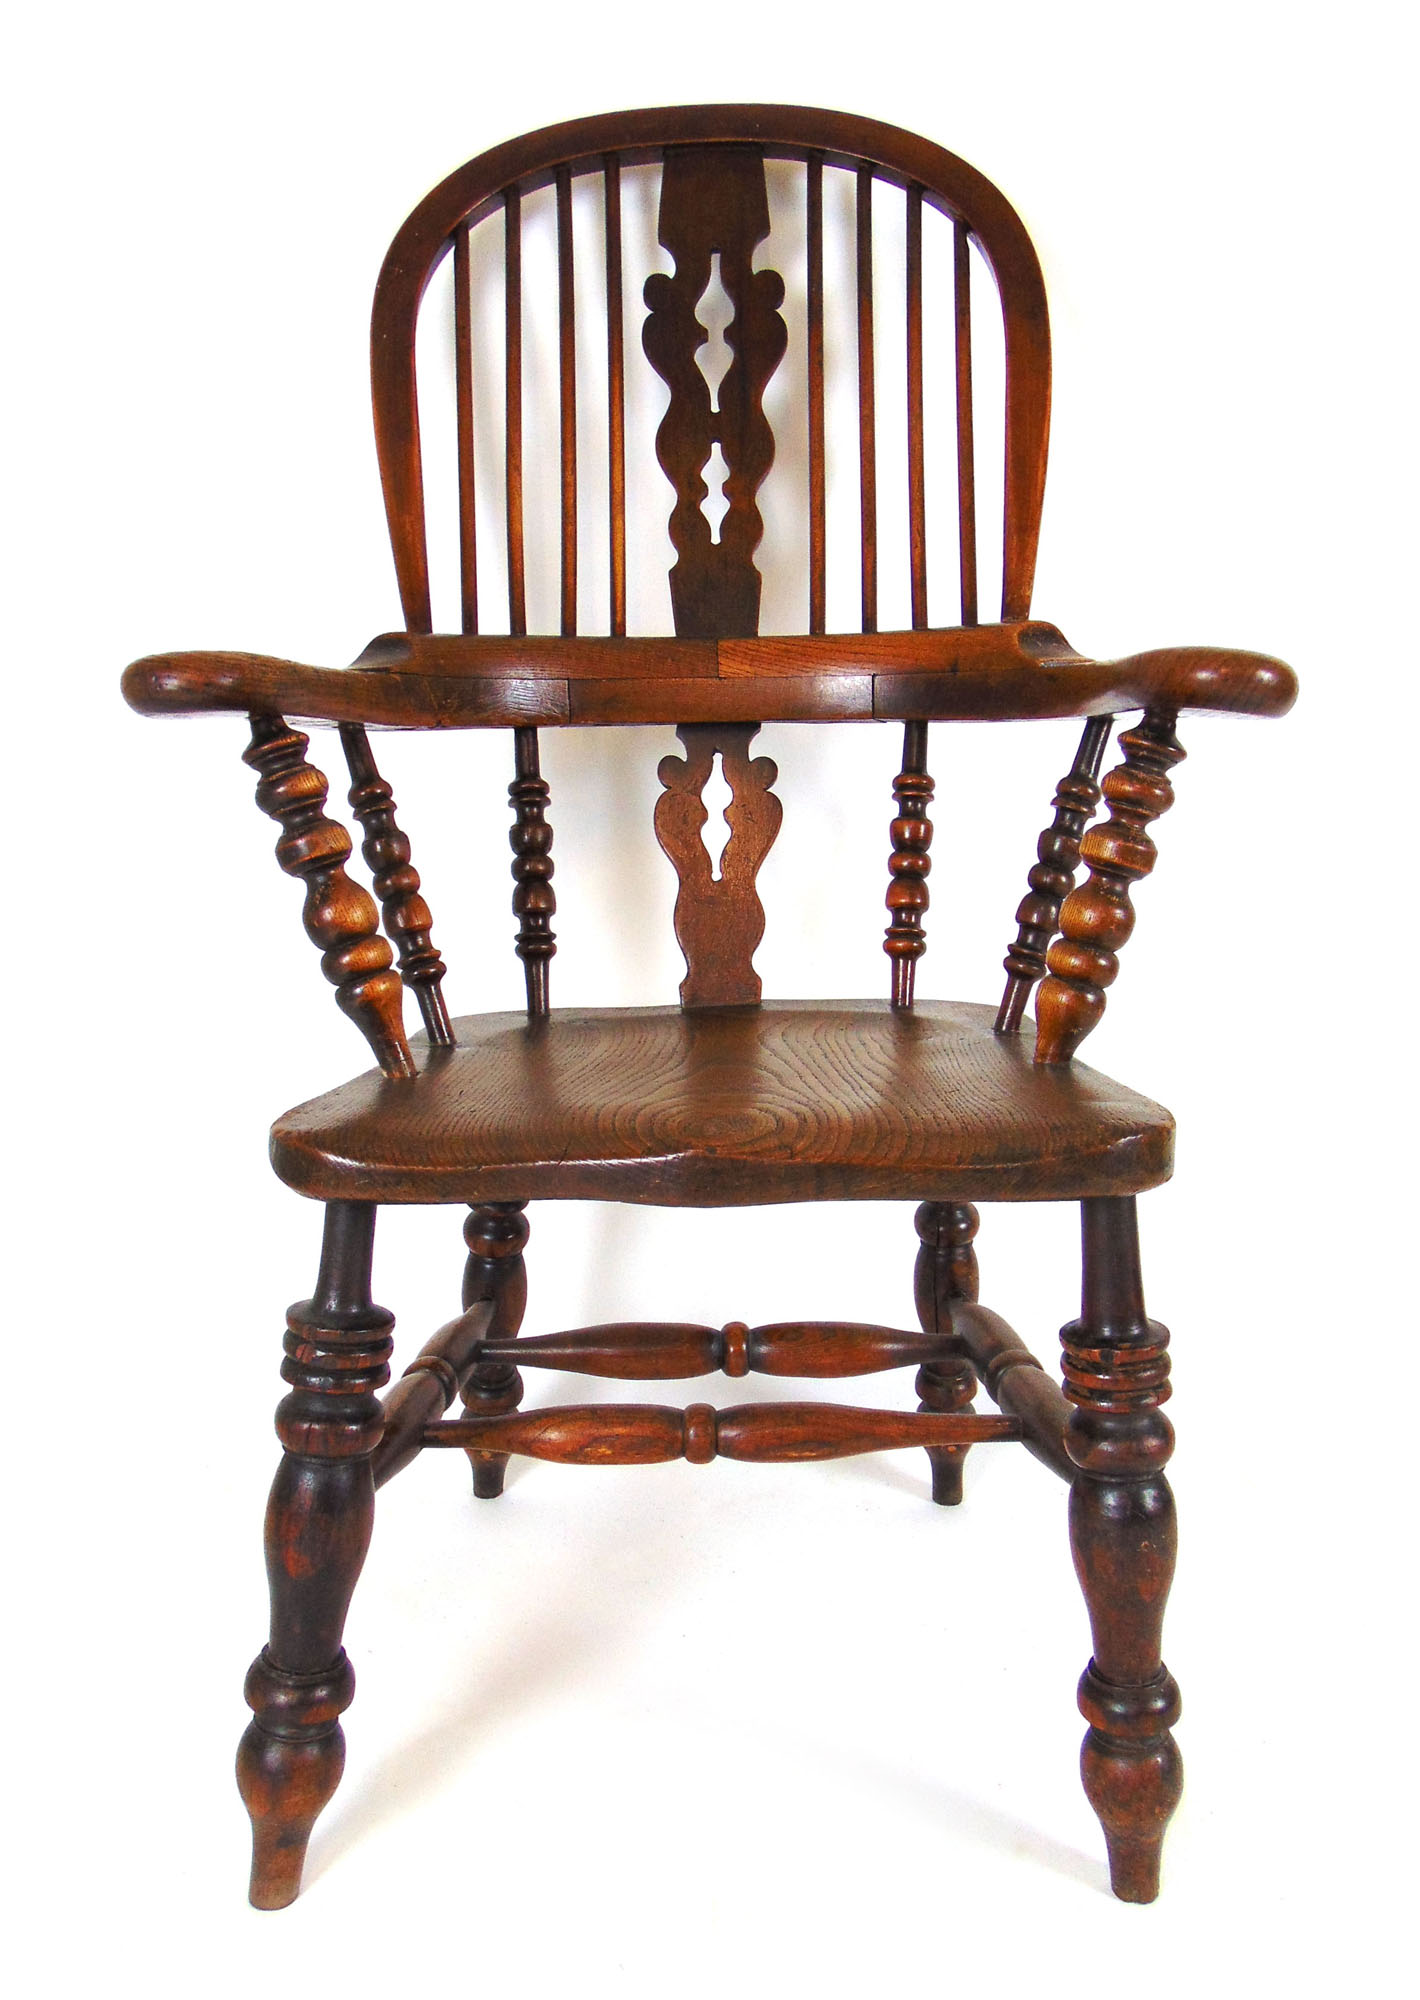 A 19th century elm Windsor chair,